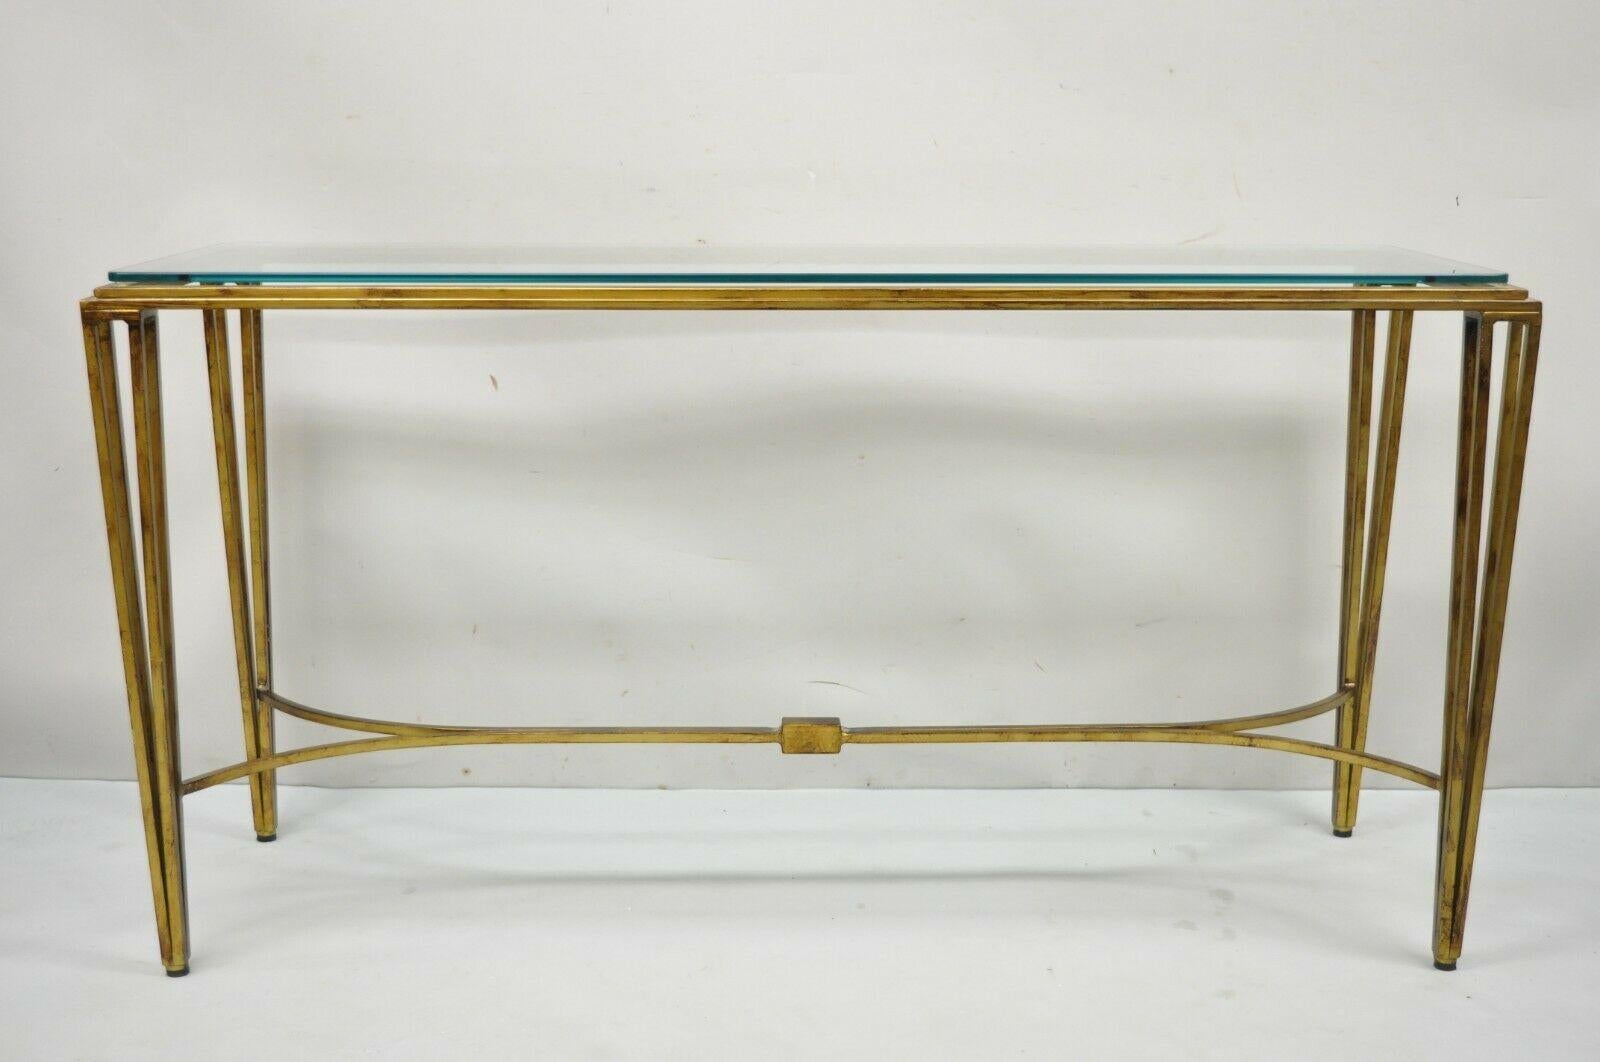 Table d'entrée moderne italienne, dorée à l'or fin, avec base en fer, dessus en verre, console de canapé de 56 pouces. Cet article se caractérise par une lourde base en fer forgé, un plateau en verre aux coins arrondis, une finition or bruni, le